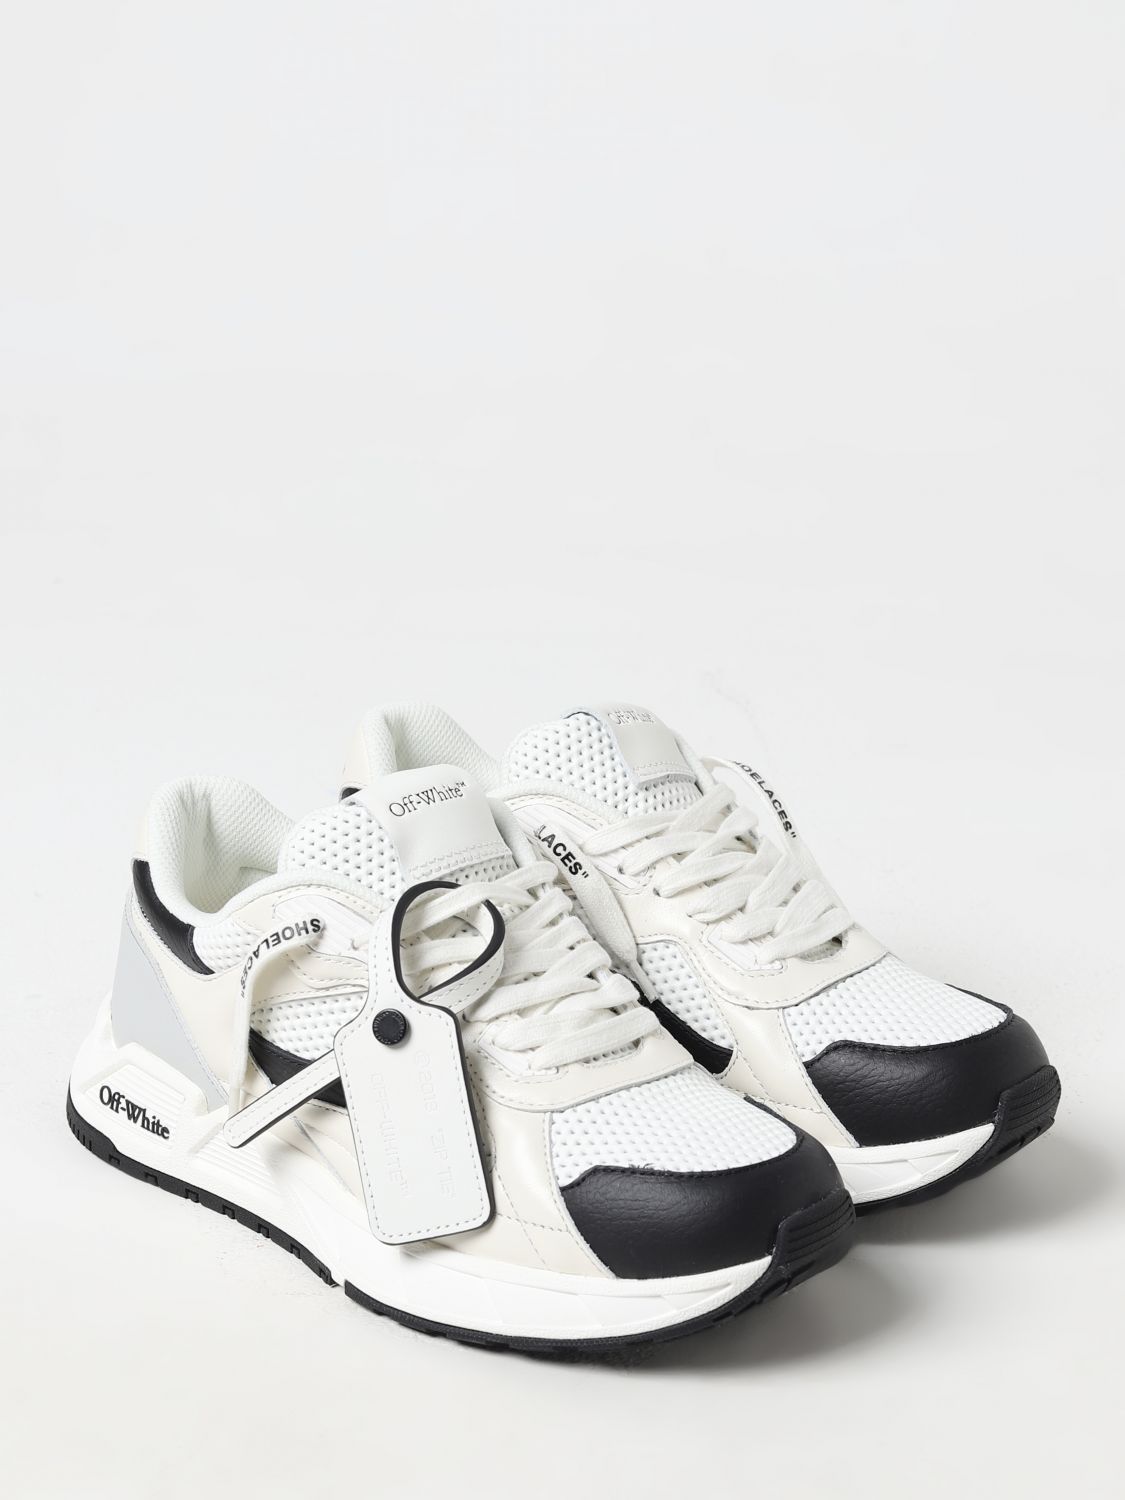 OFF-WHITE: Zapatillas para mujer, Blanco 1  Zapatillas Off-White  OWIA275C99LEA002 en línea en